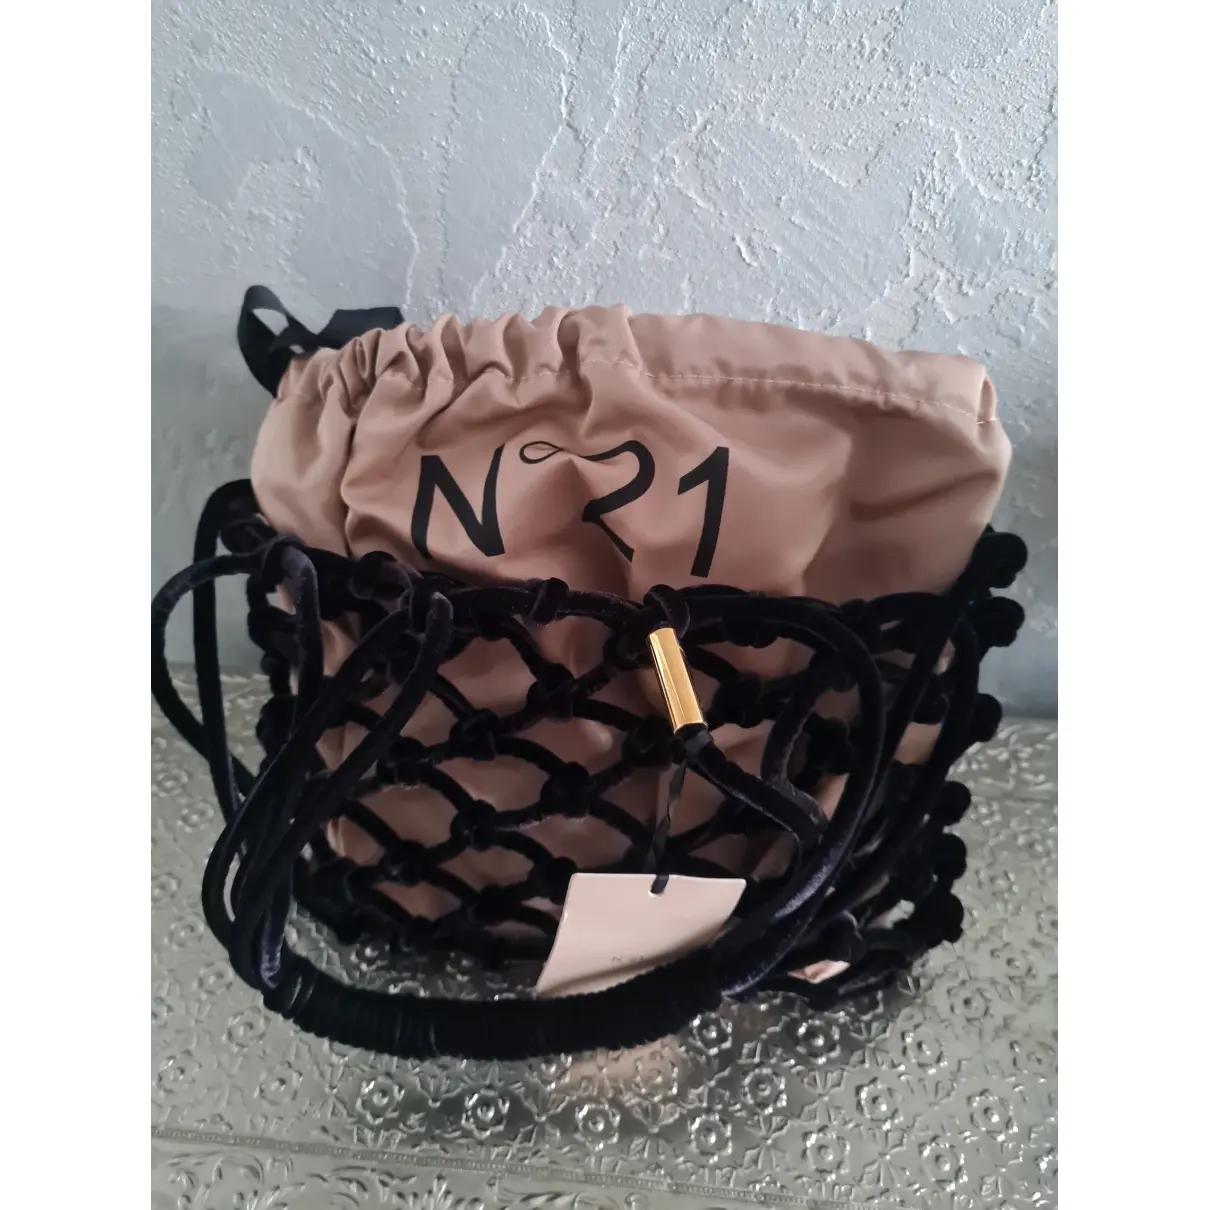 Buy N°21 Velvet handbag online